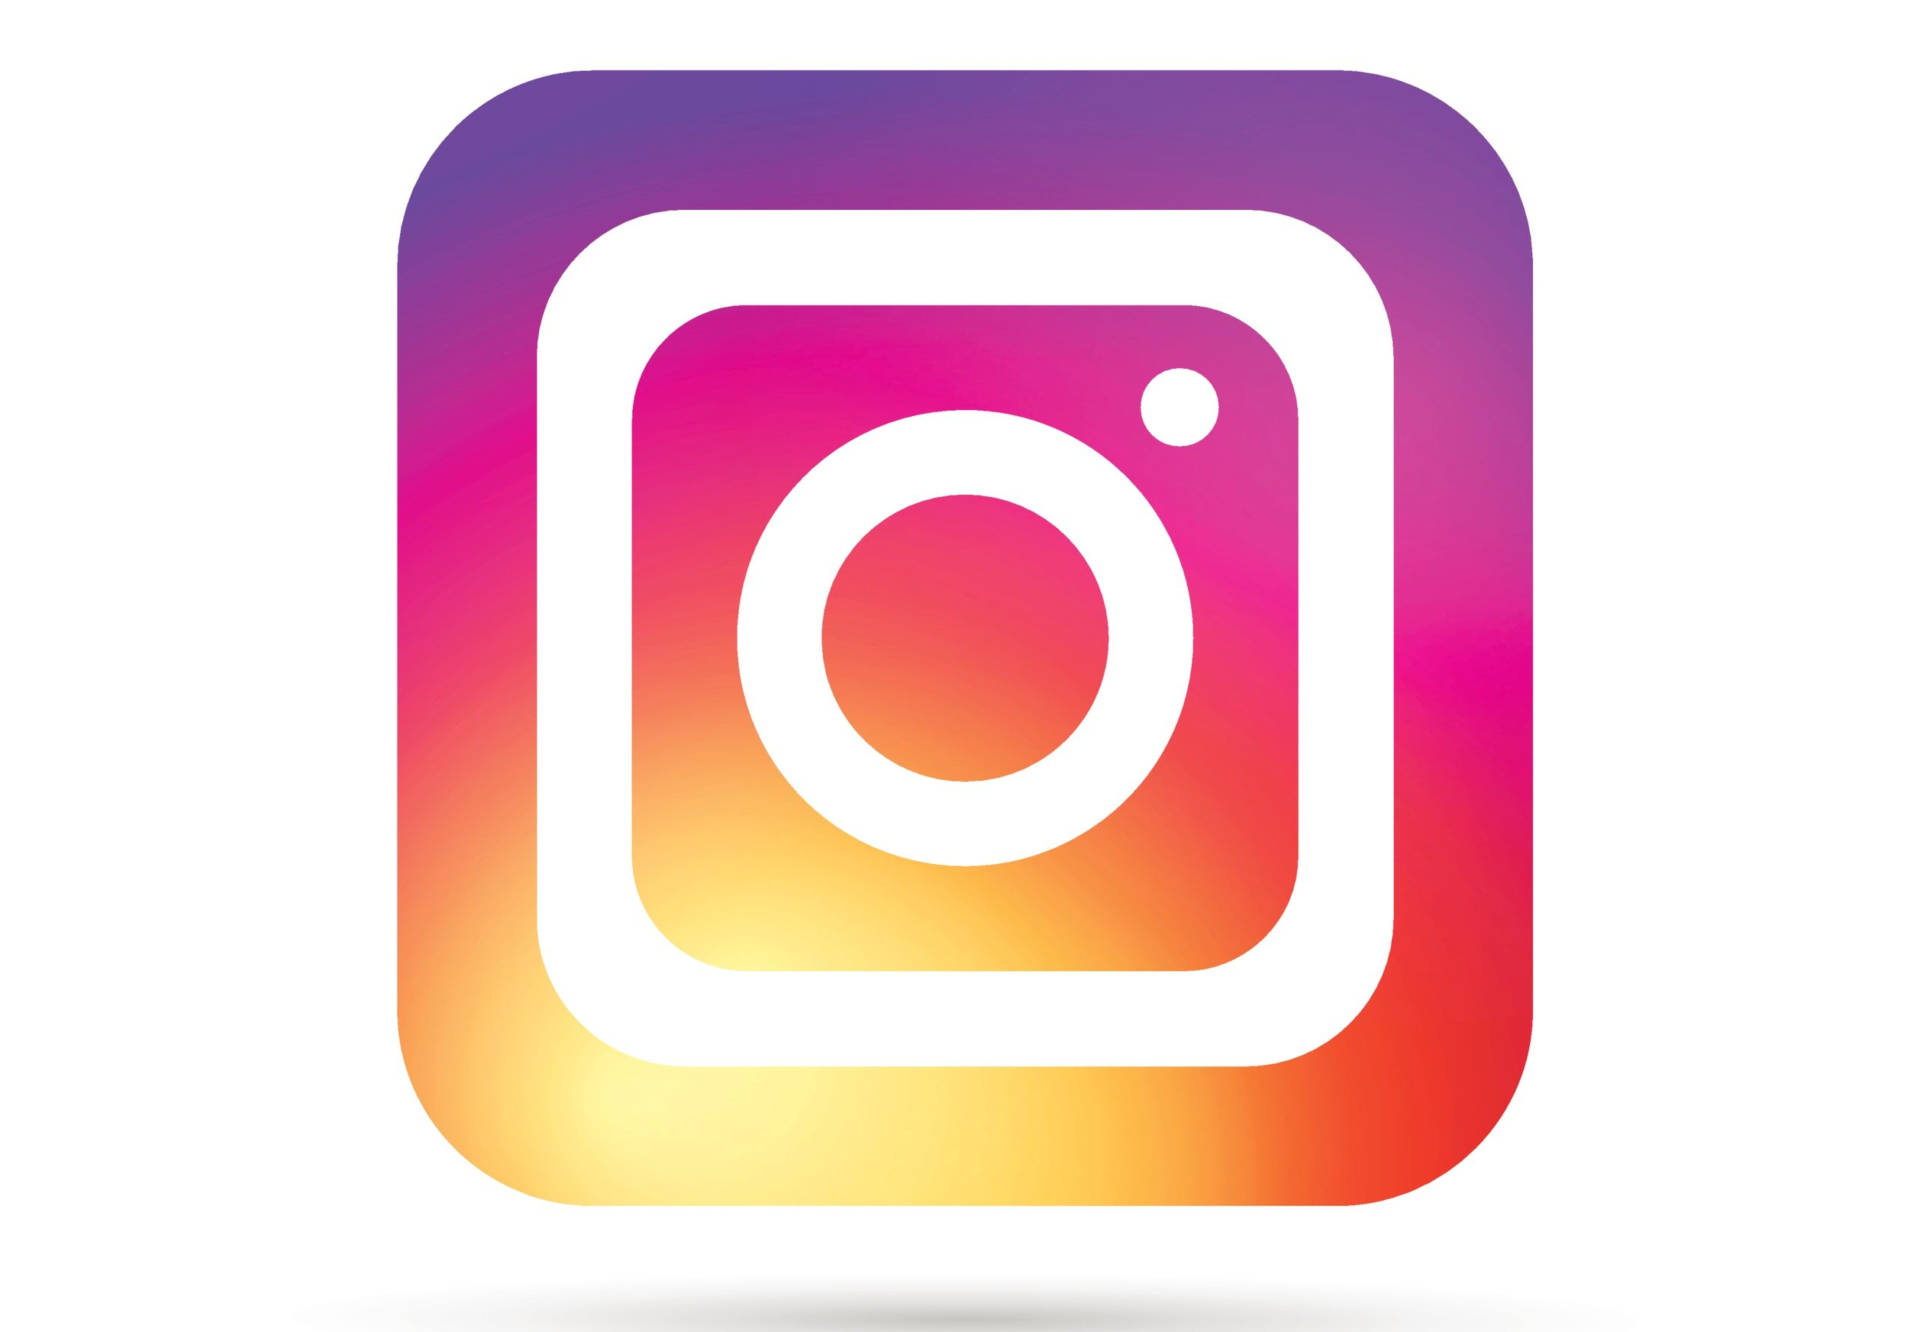 Cute Instagram Logo On White Background Wallpaper